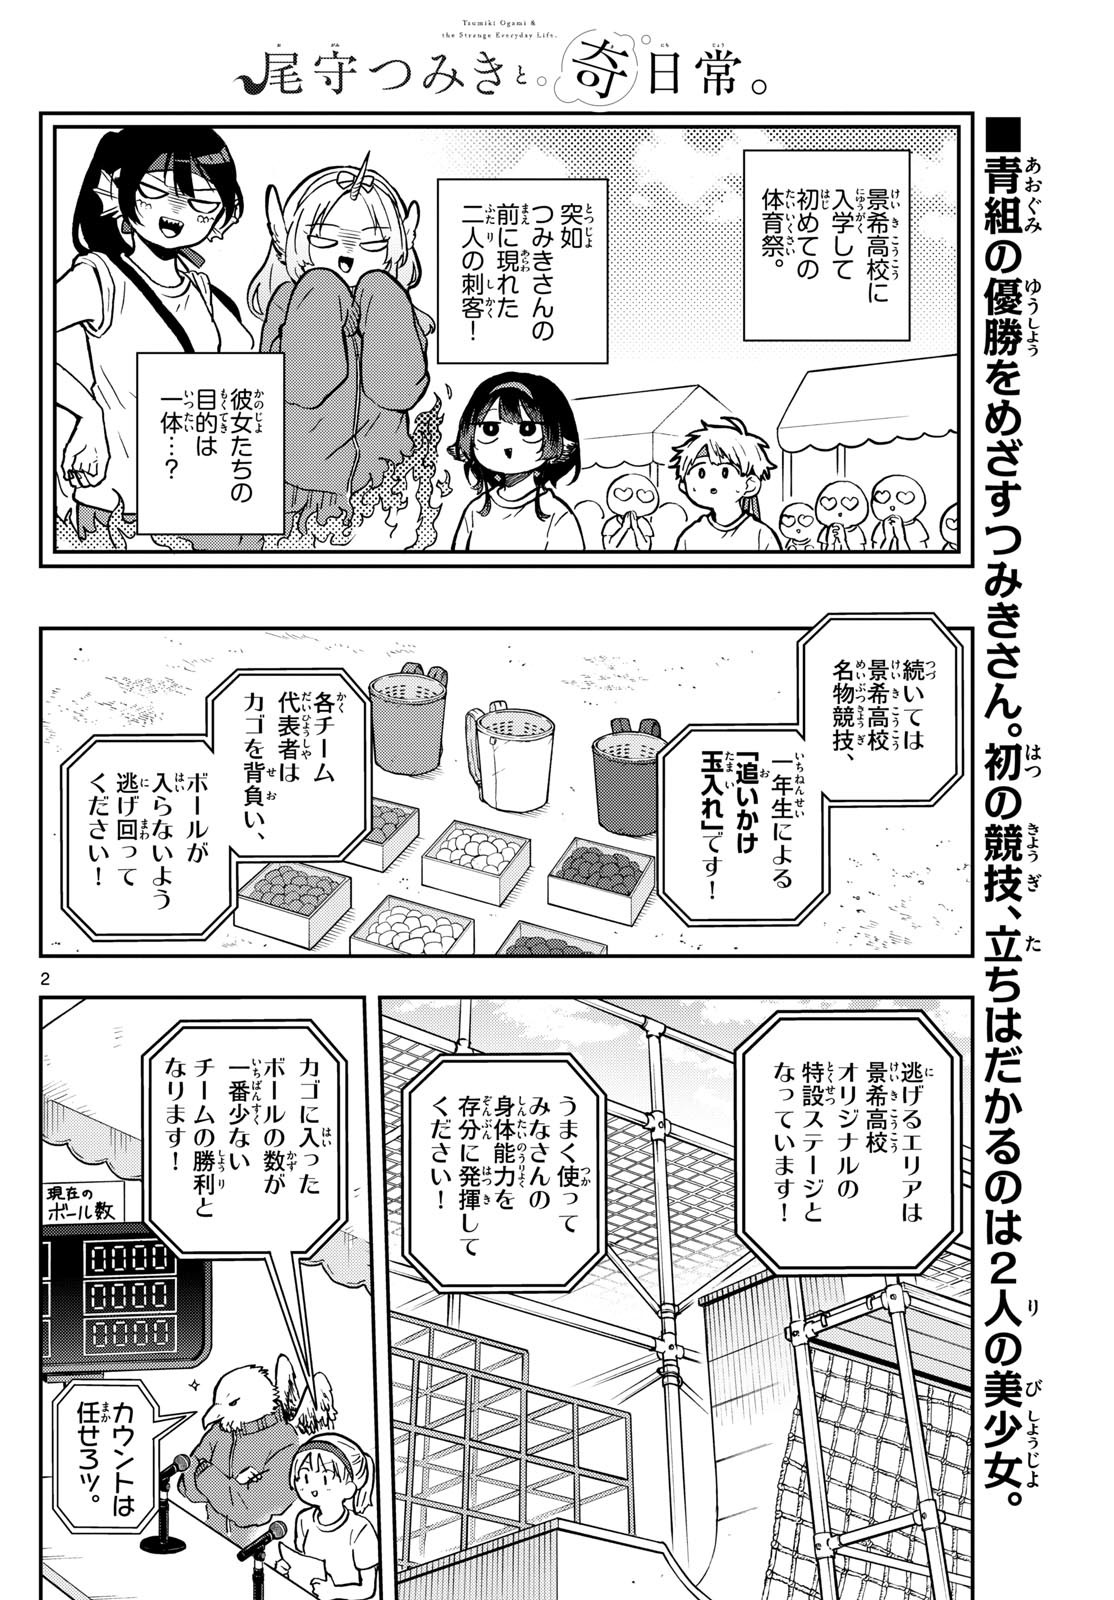 Omori Tsumiki to Kinichijou. - Chapter 13 - Page 2